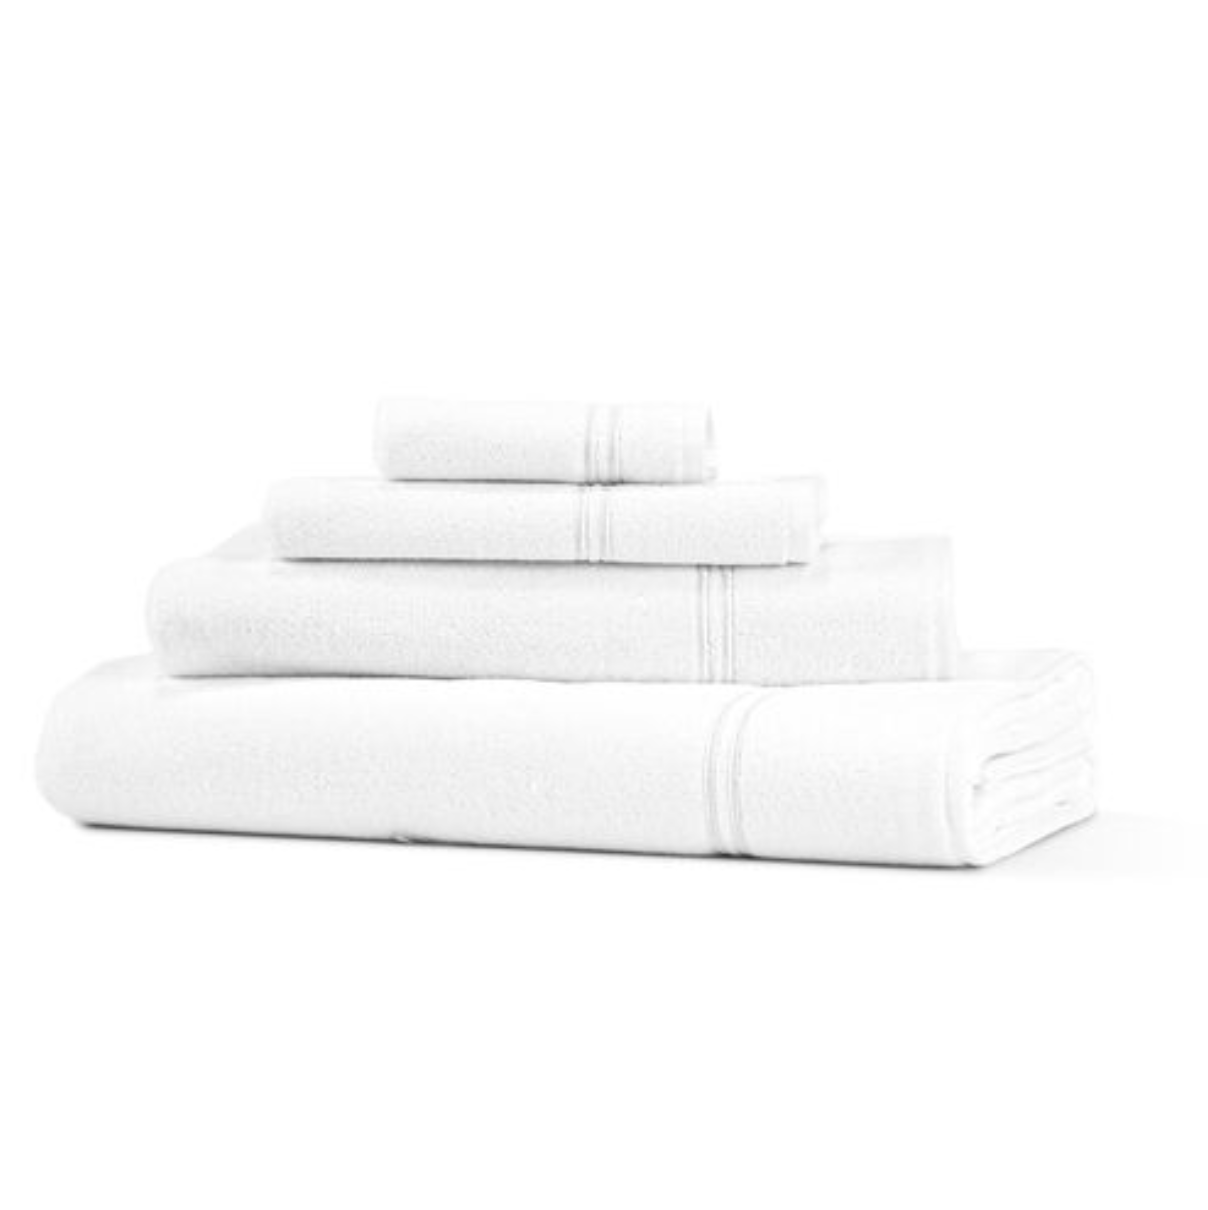 Frette One Bourdon Bath Towel in White/Sepia, Cotton | Made in Portugal